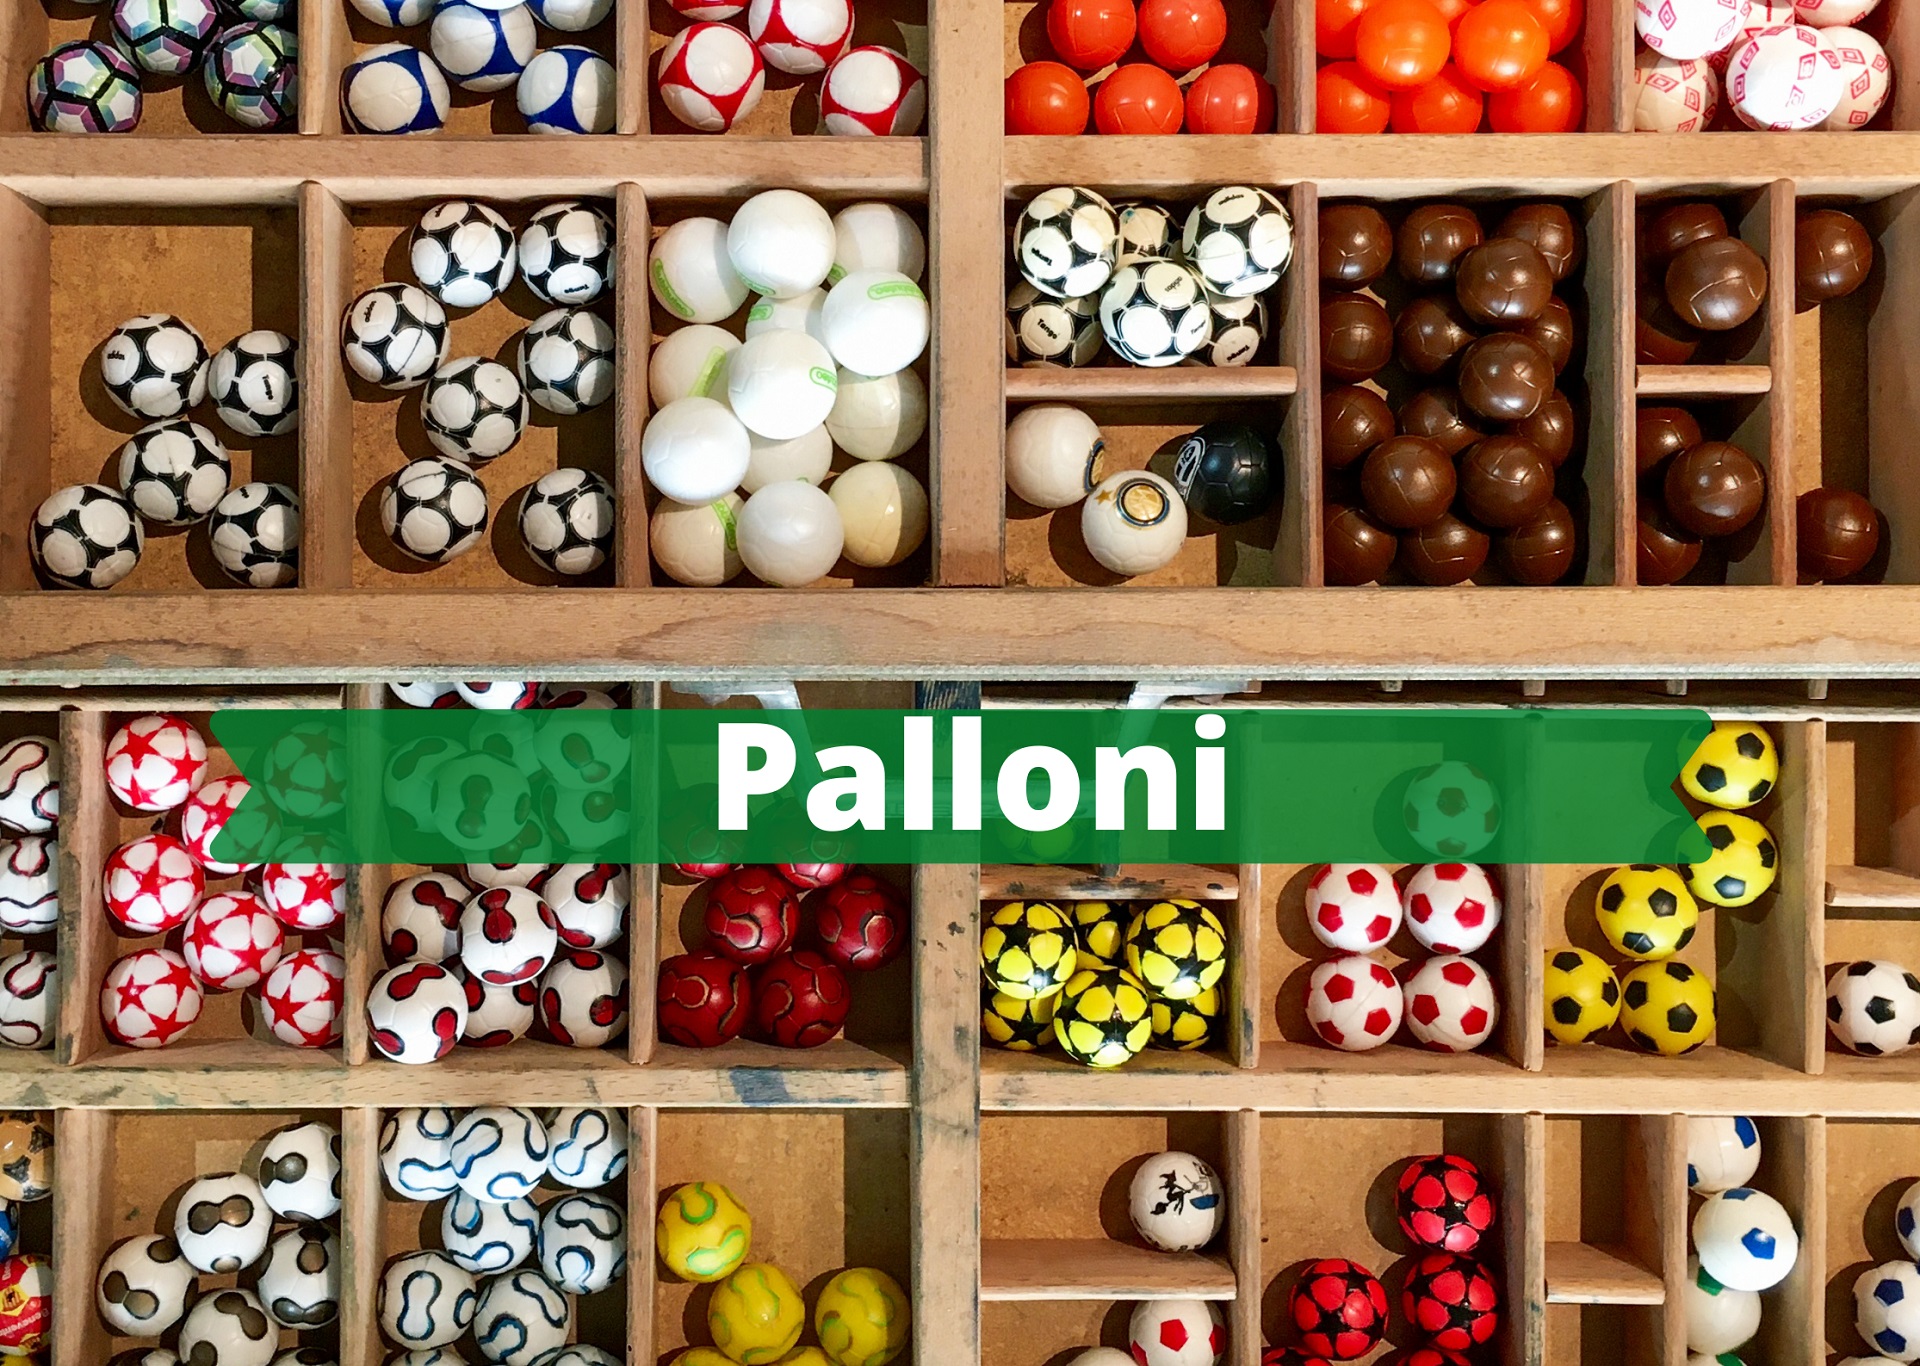 palloni-subbuteo-calcio-in-miniatura